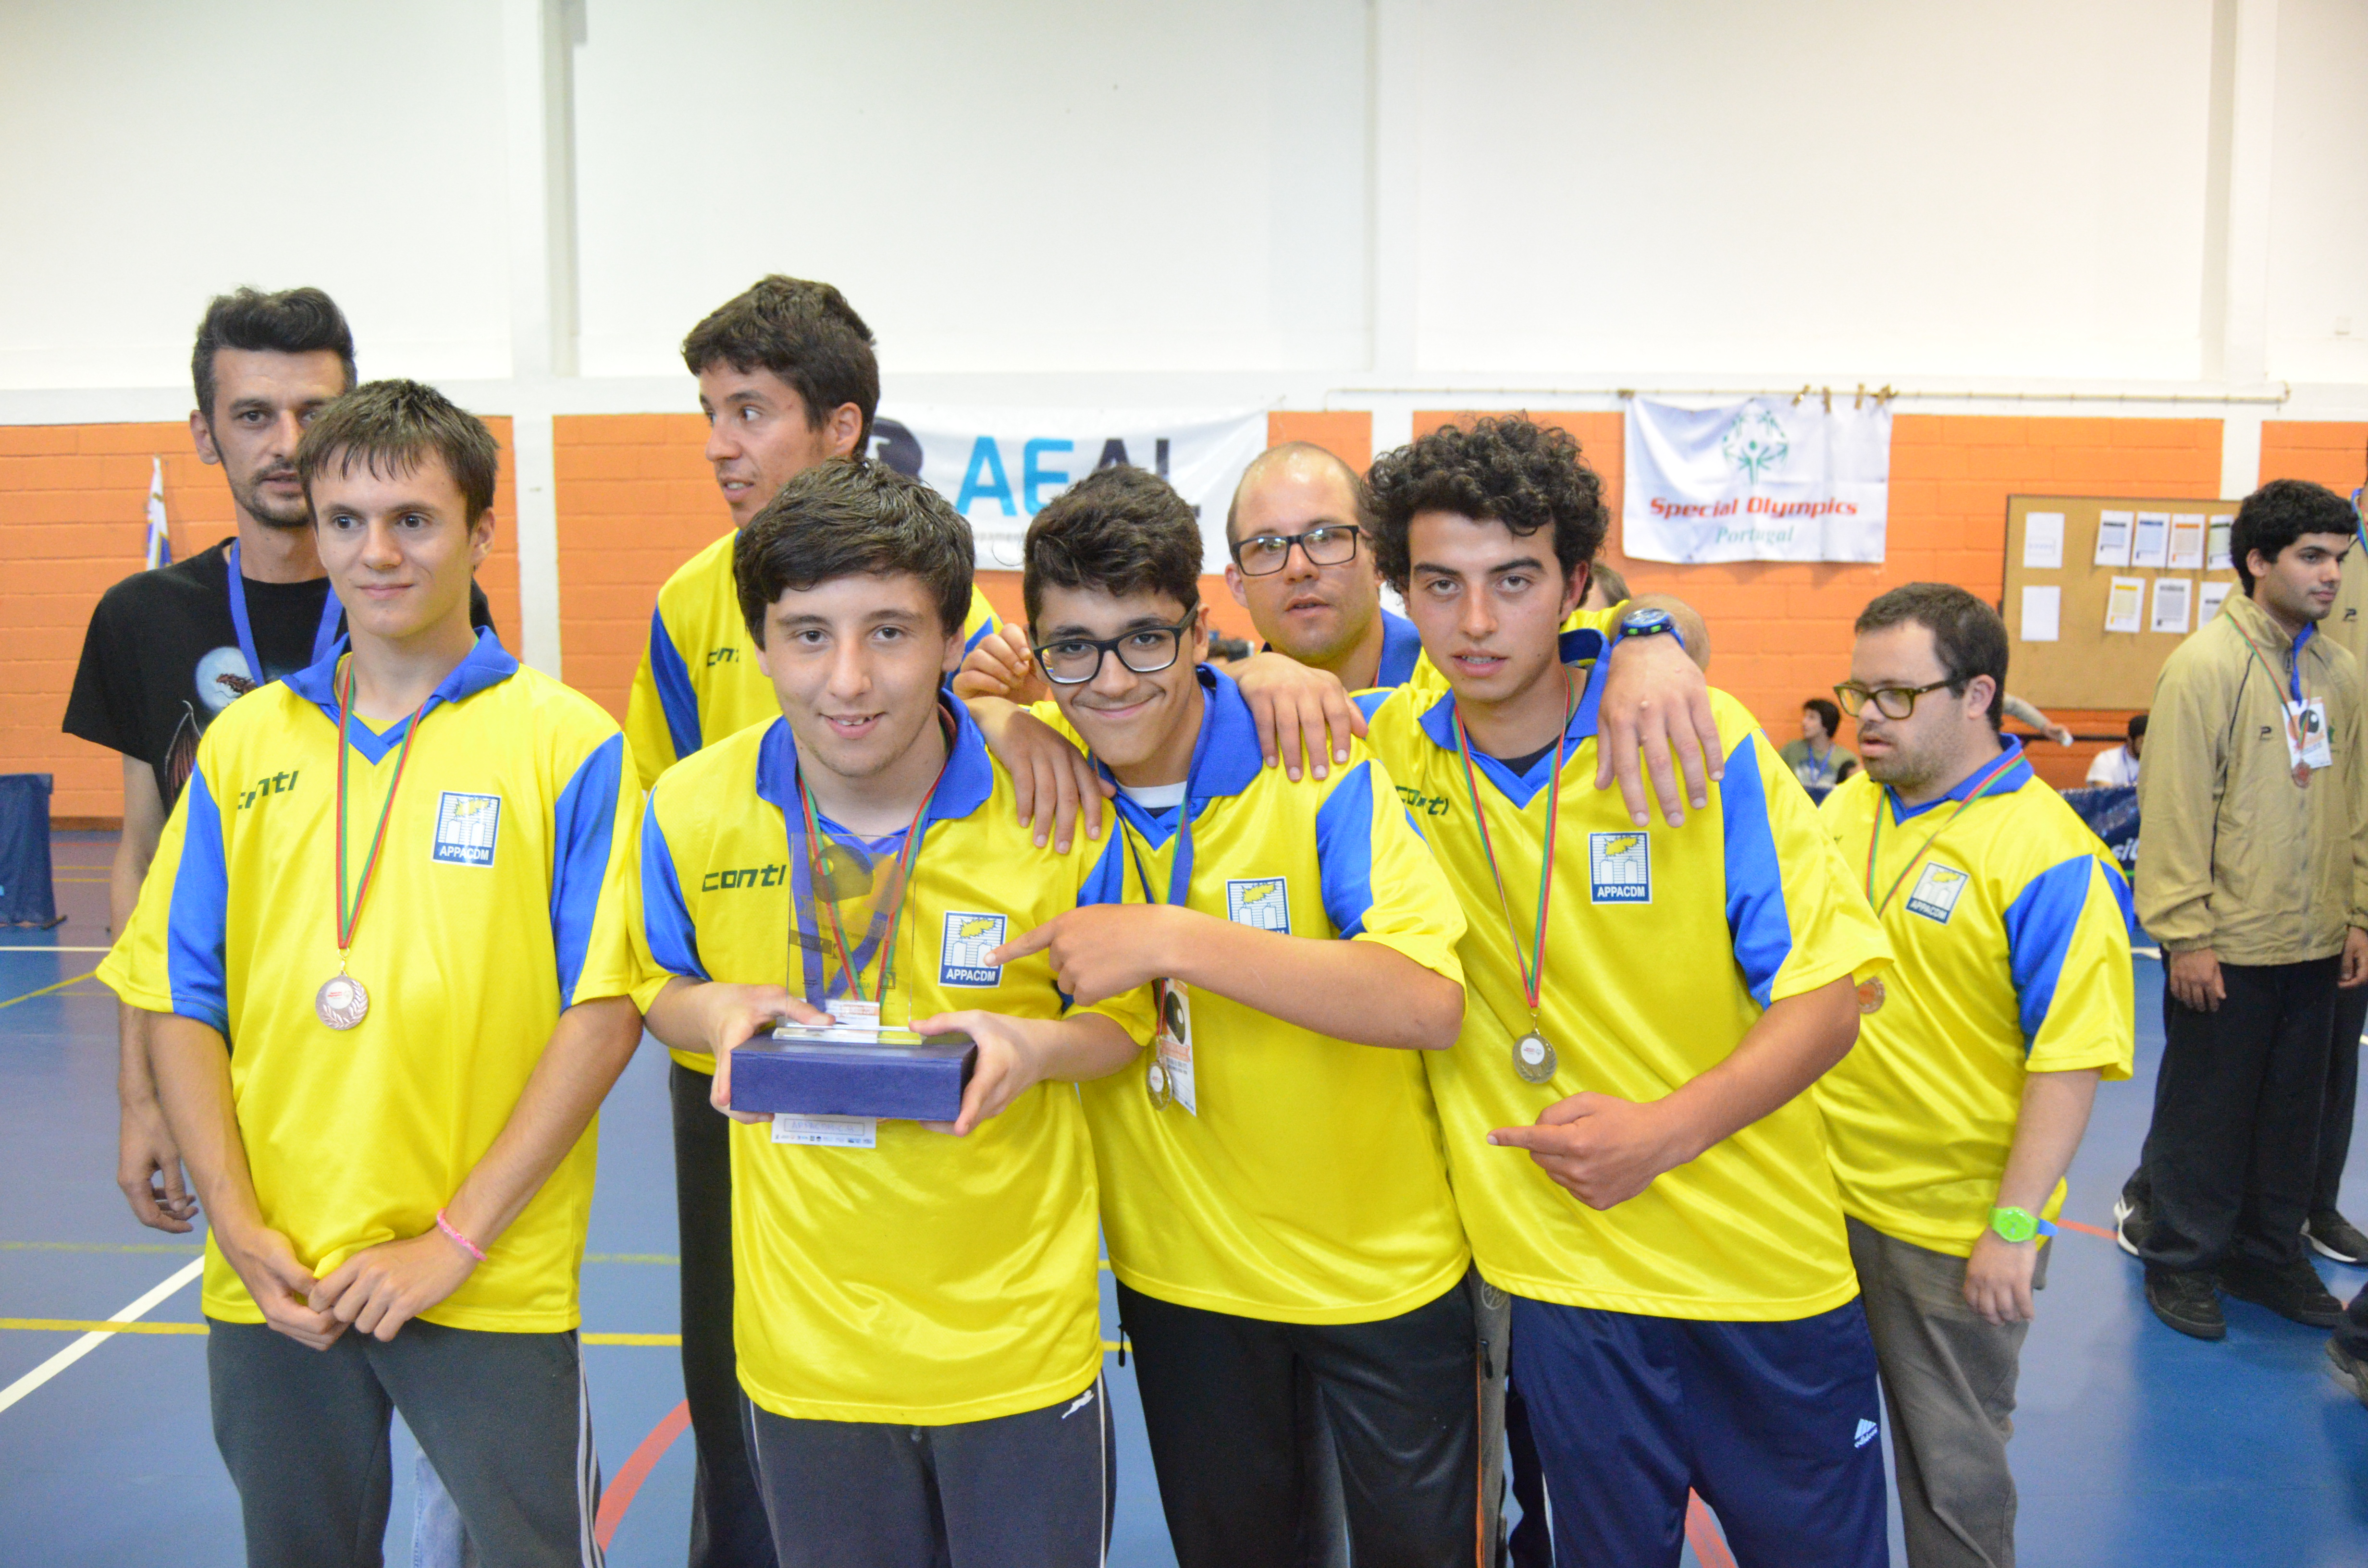 II Campeonato Nacional de Ténis de Mesa do Special Olympics Portugal decorreu em Castelo Branco